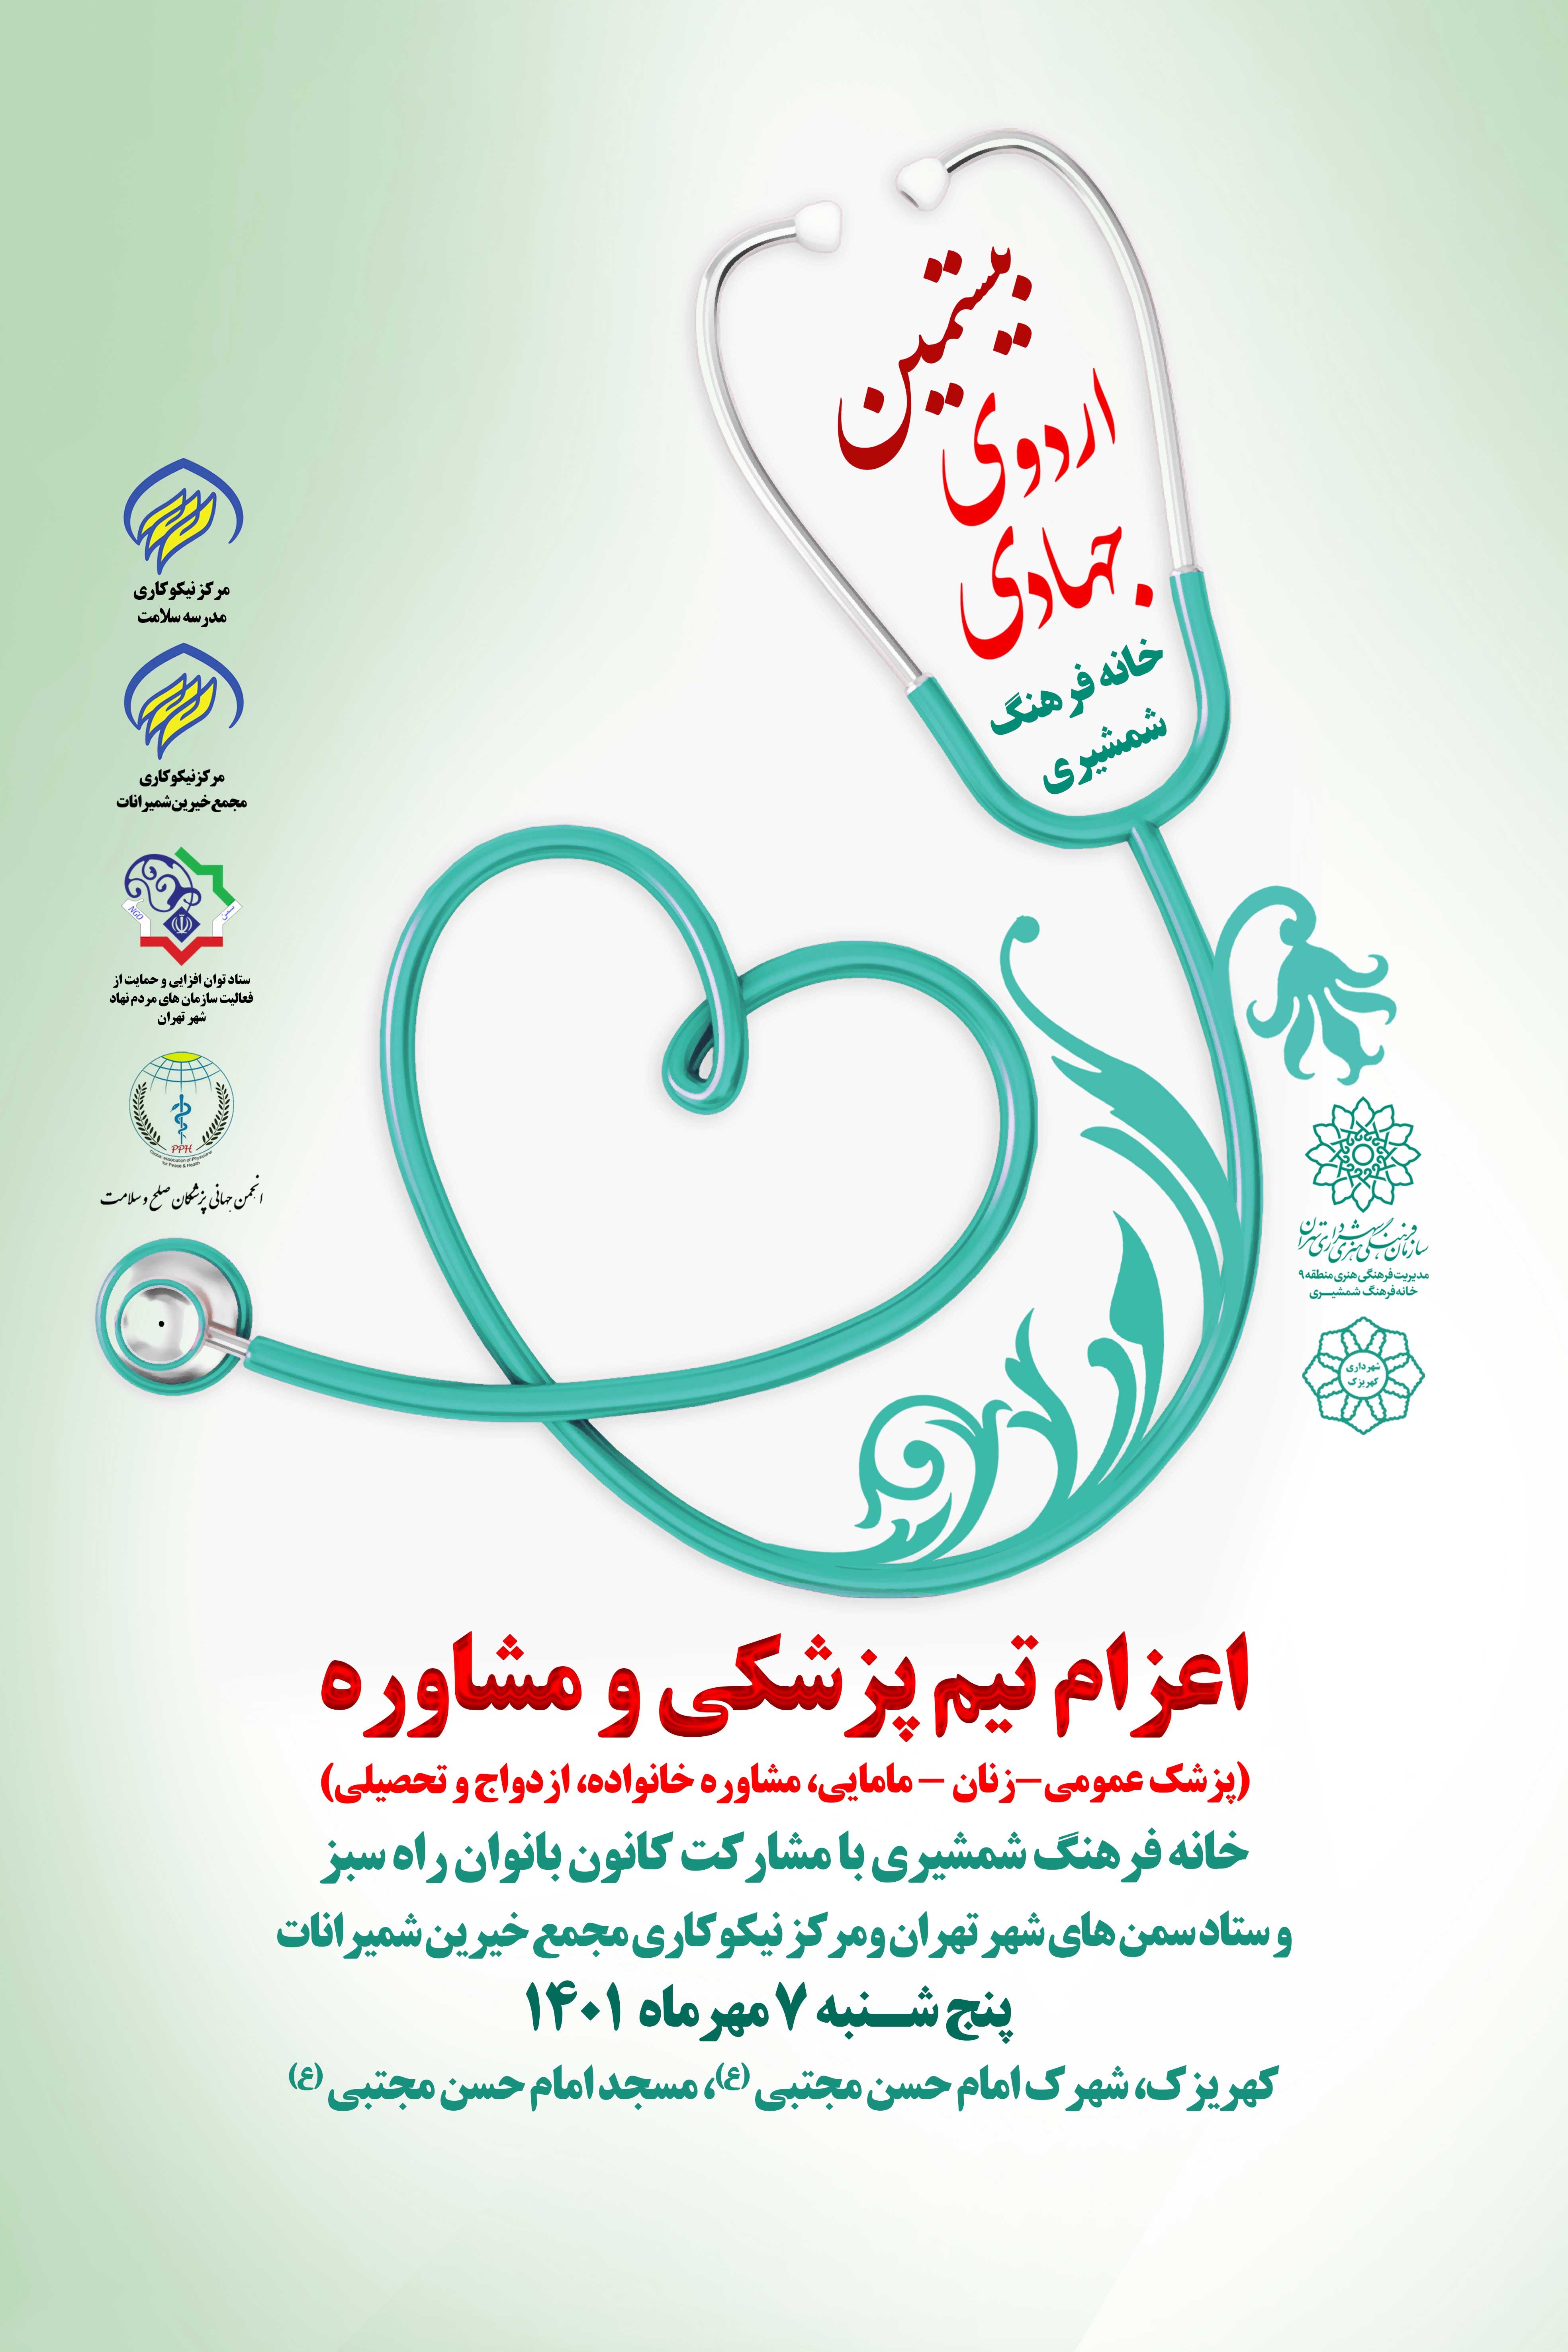 بیستمین اردوی جهادی ، اعزام تیم پزشکی به کهریزک